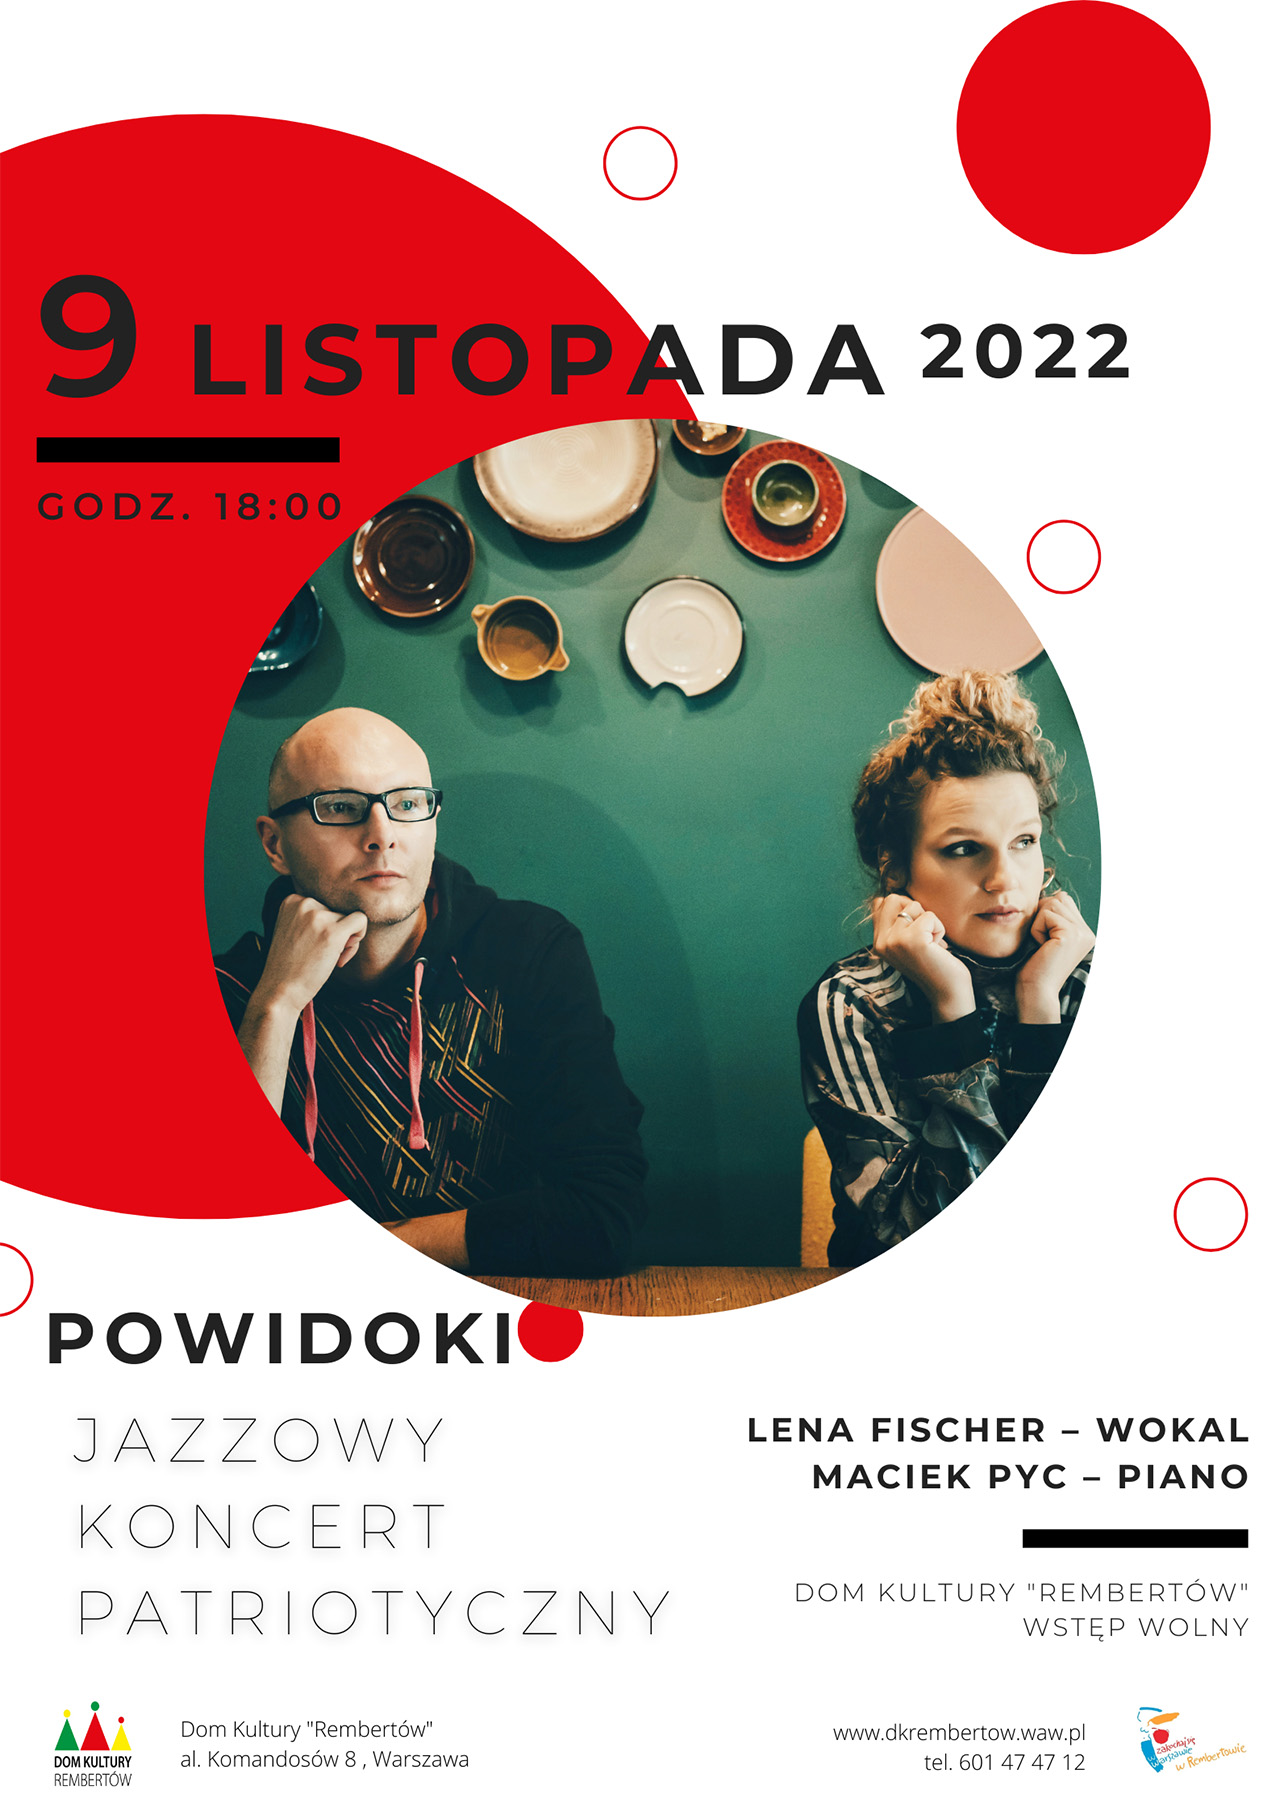 zapraszamy na jazzowy koncert patriotyczny duetu Powidoki 9 listopada o godz 18 w Sali widowiskowej domu kultury Rembertów przy al. Komandosów 8 w Warszawie